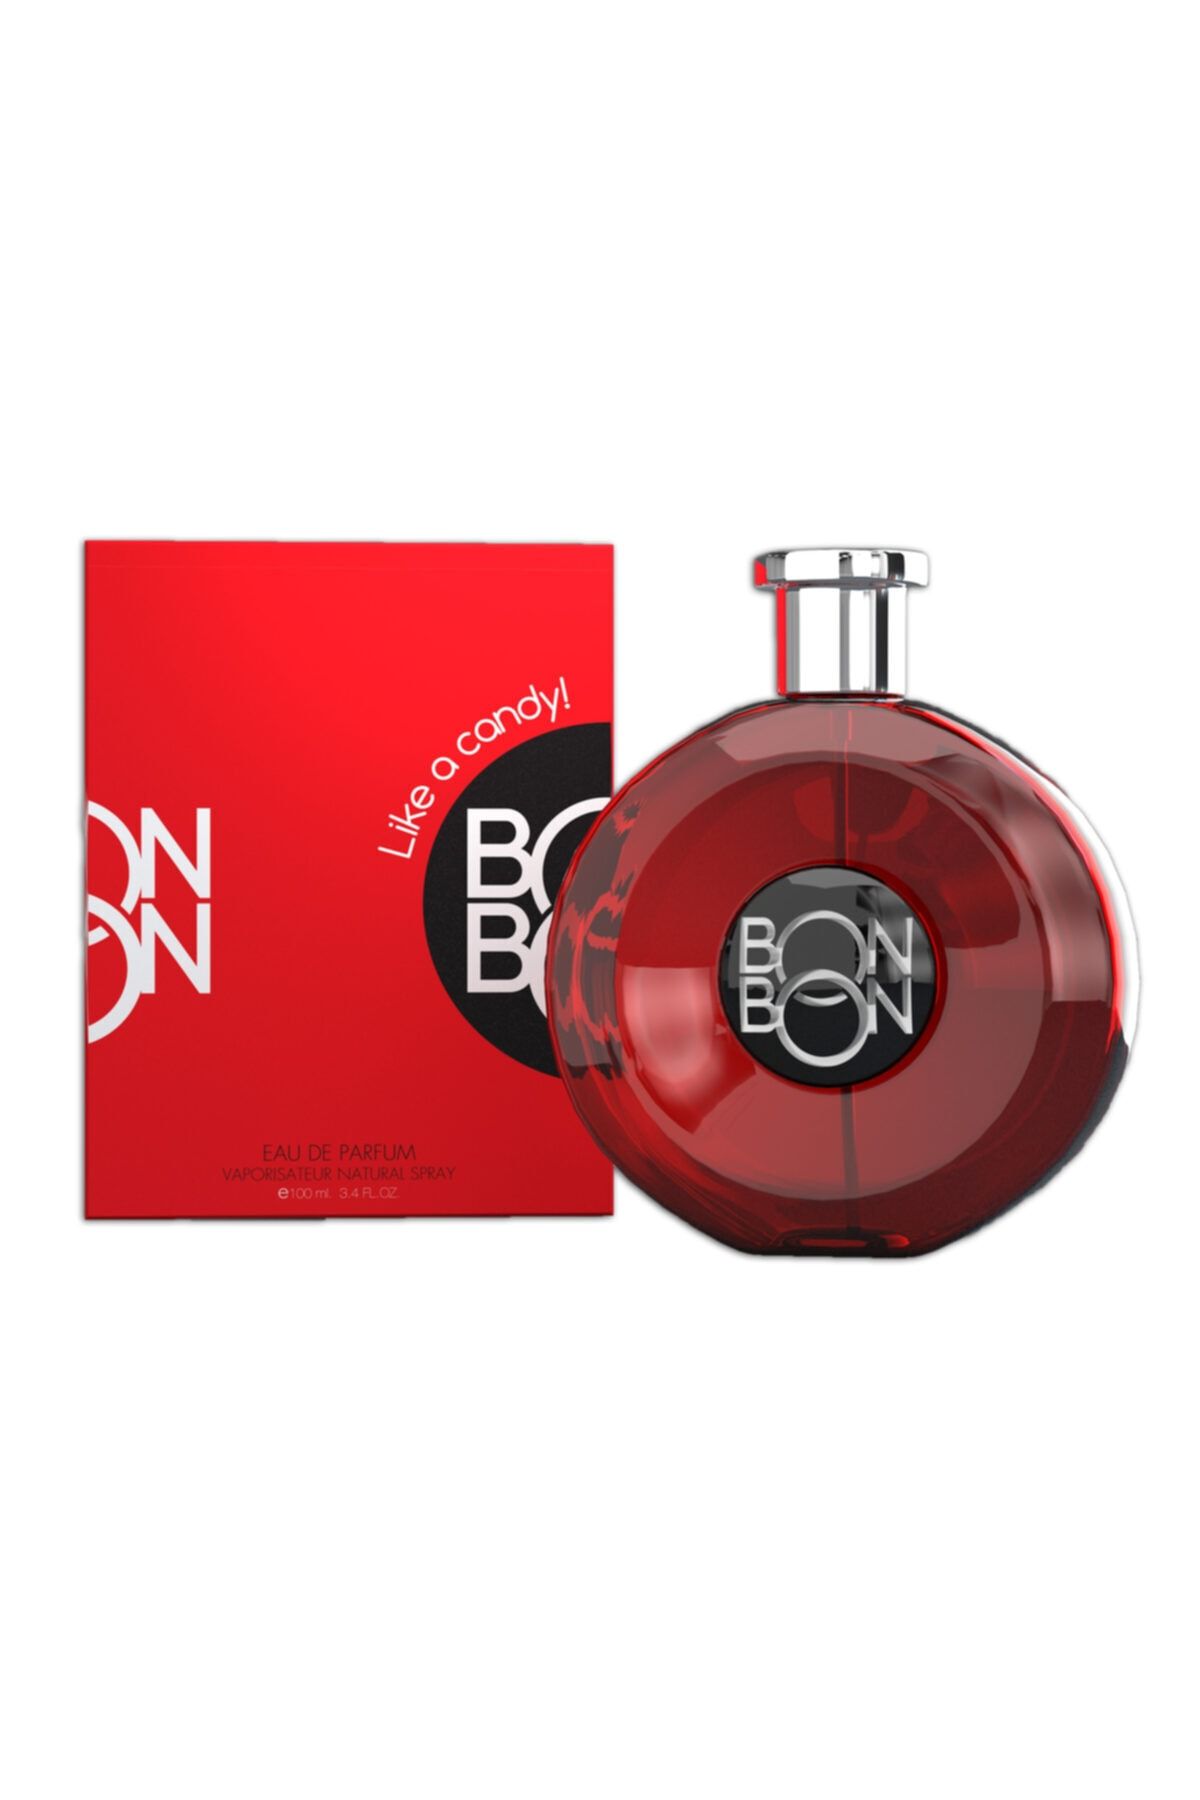 BONBON ® Eau De Parfum For Women